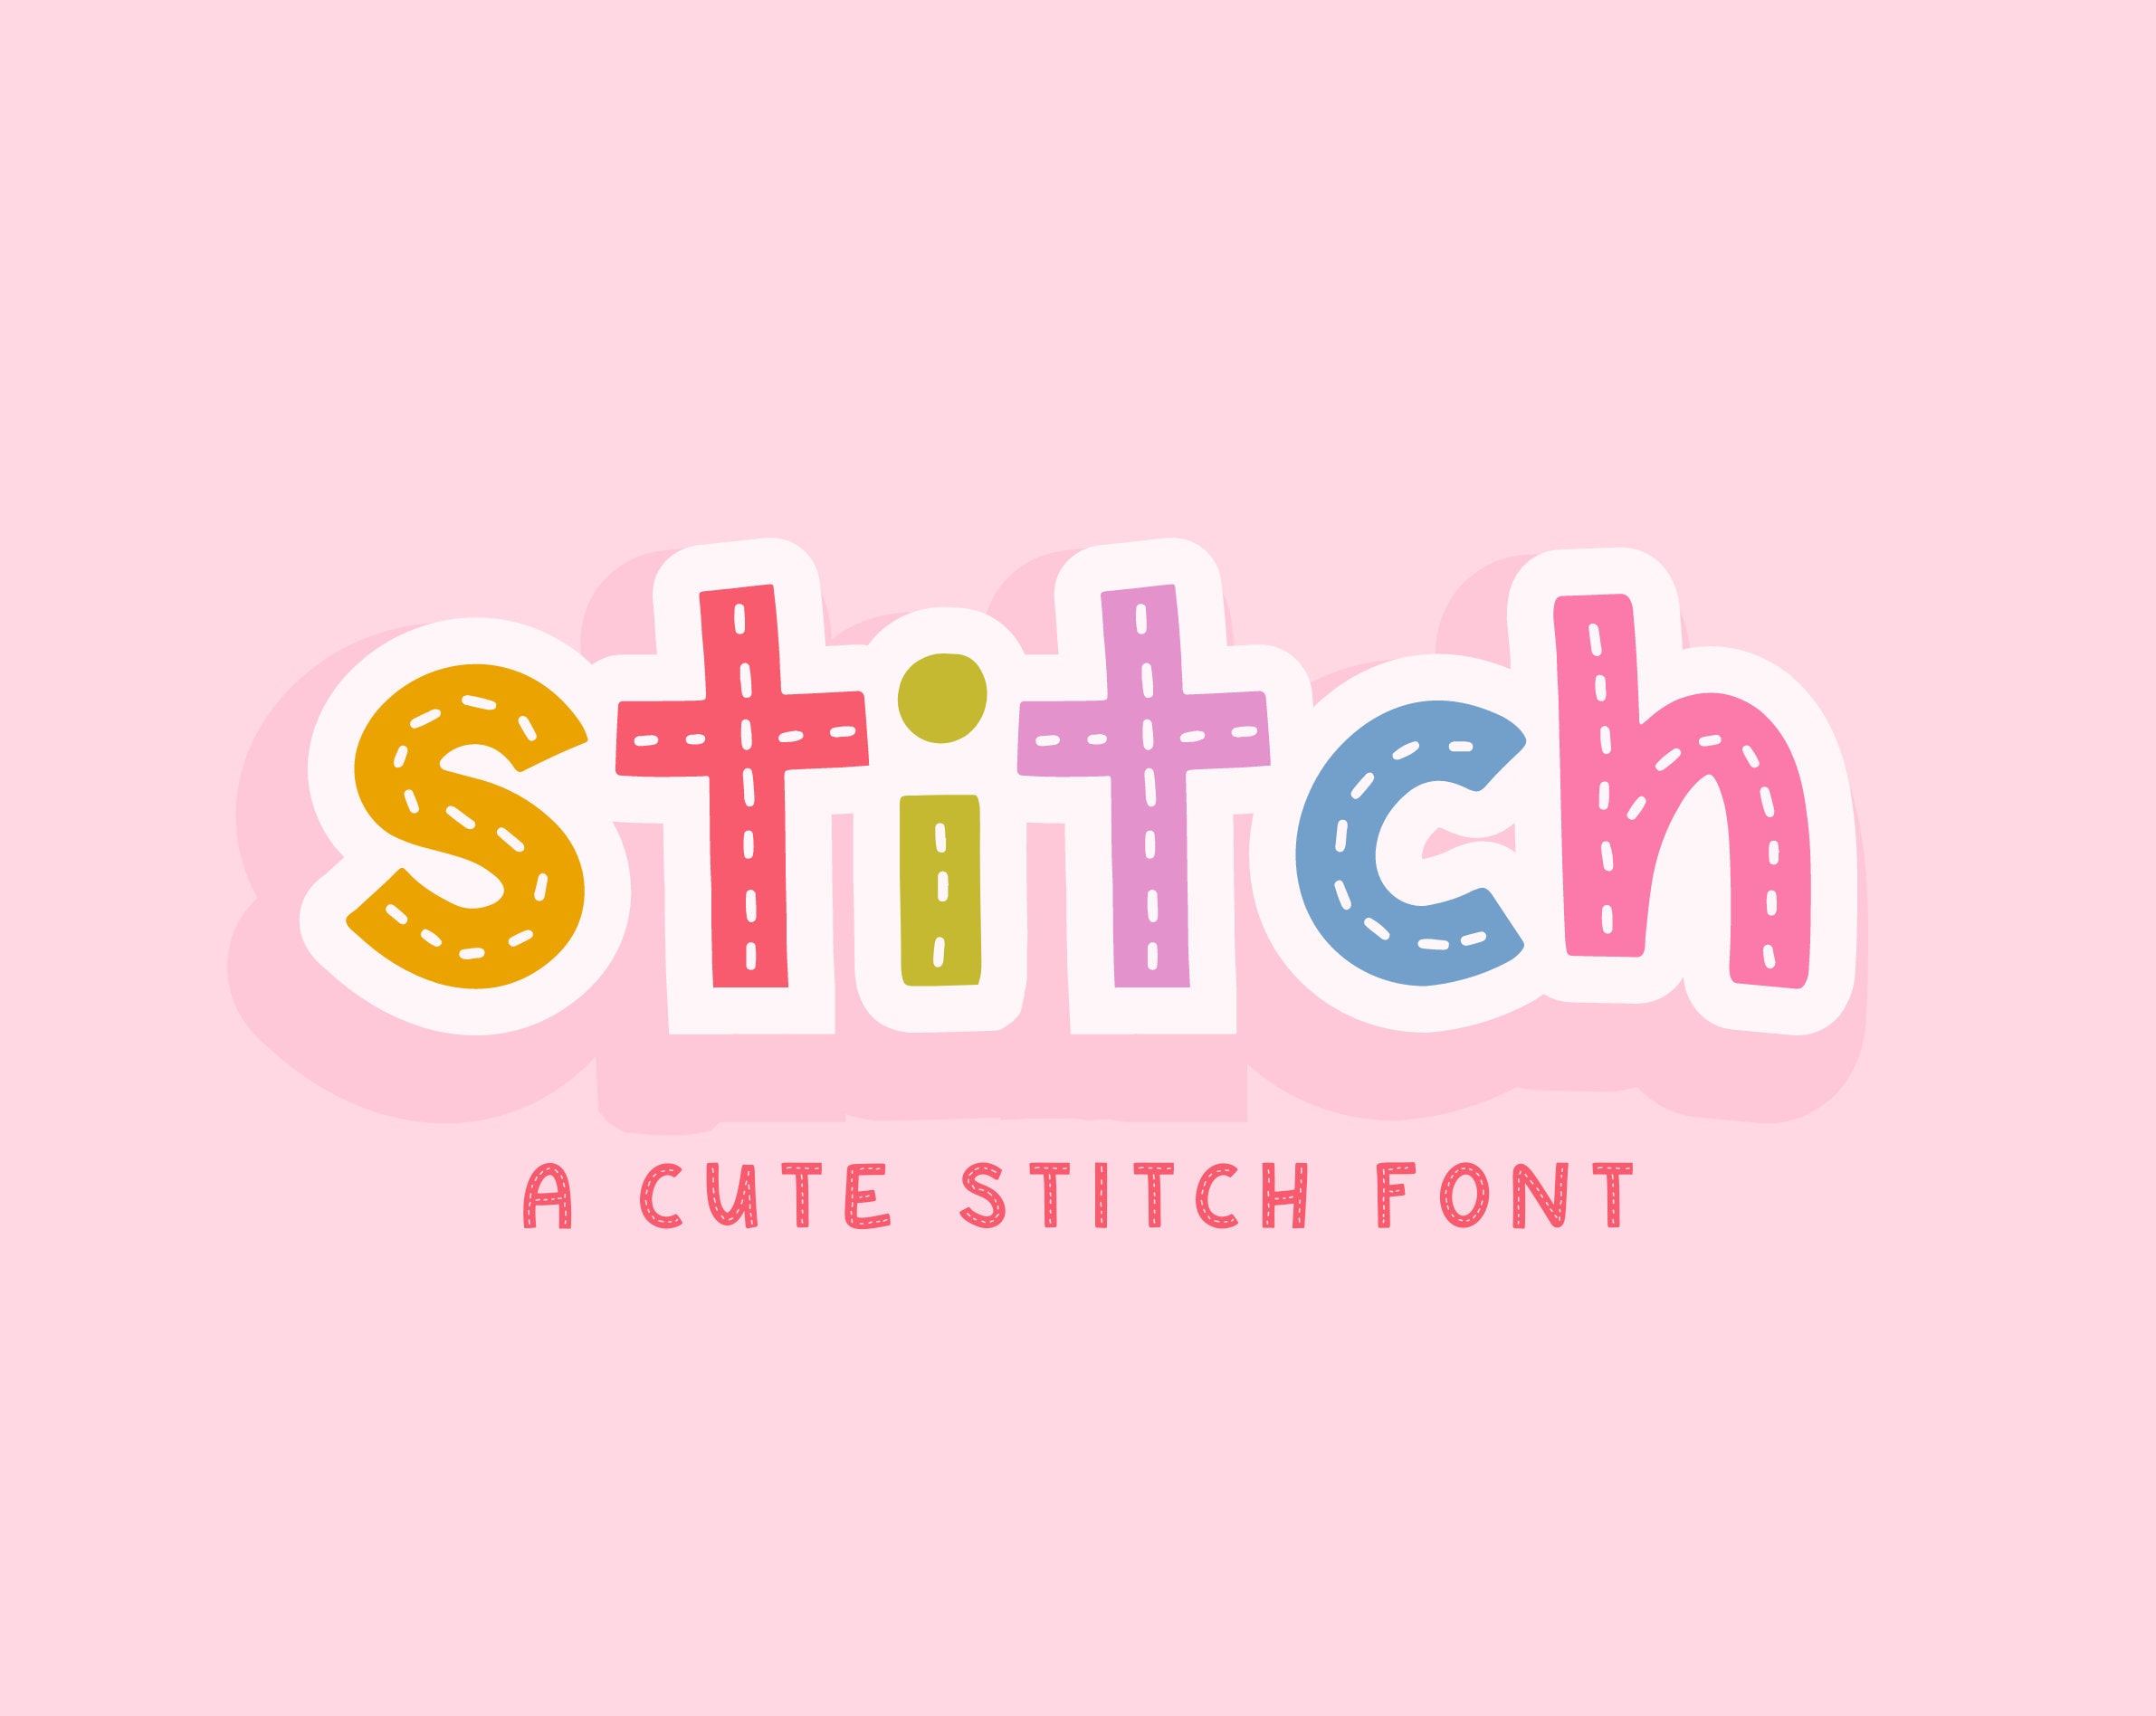 Kawaii Stitch Font Download - Fonts4Free